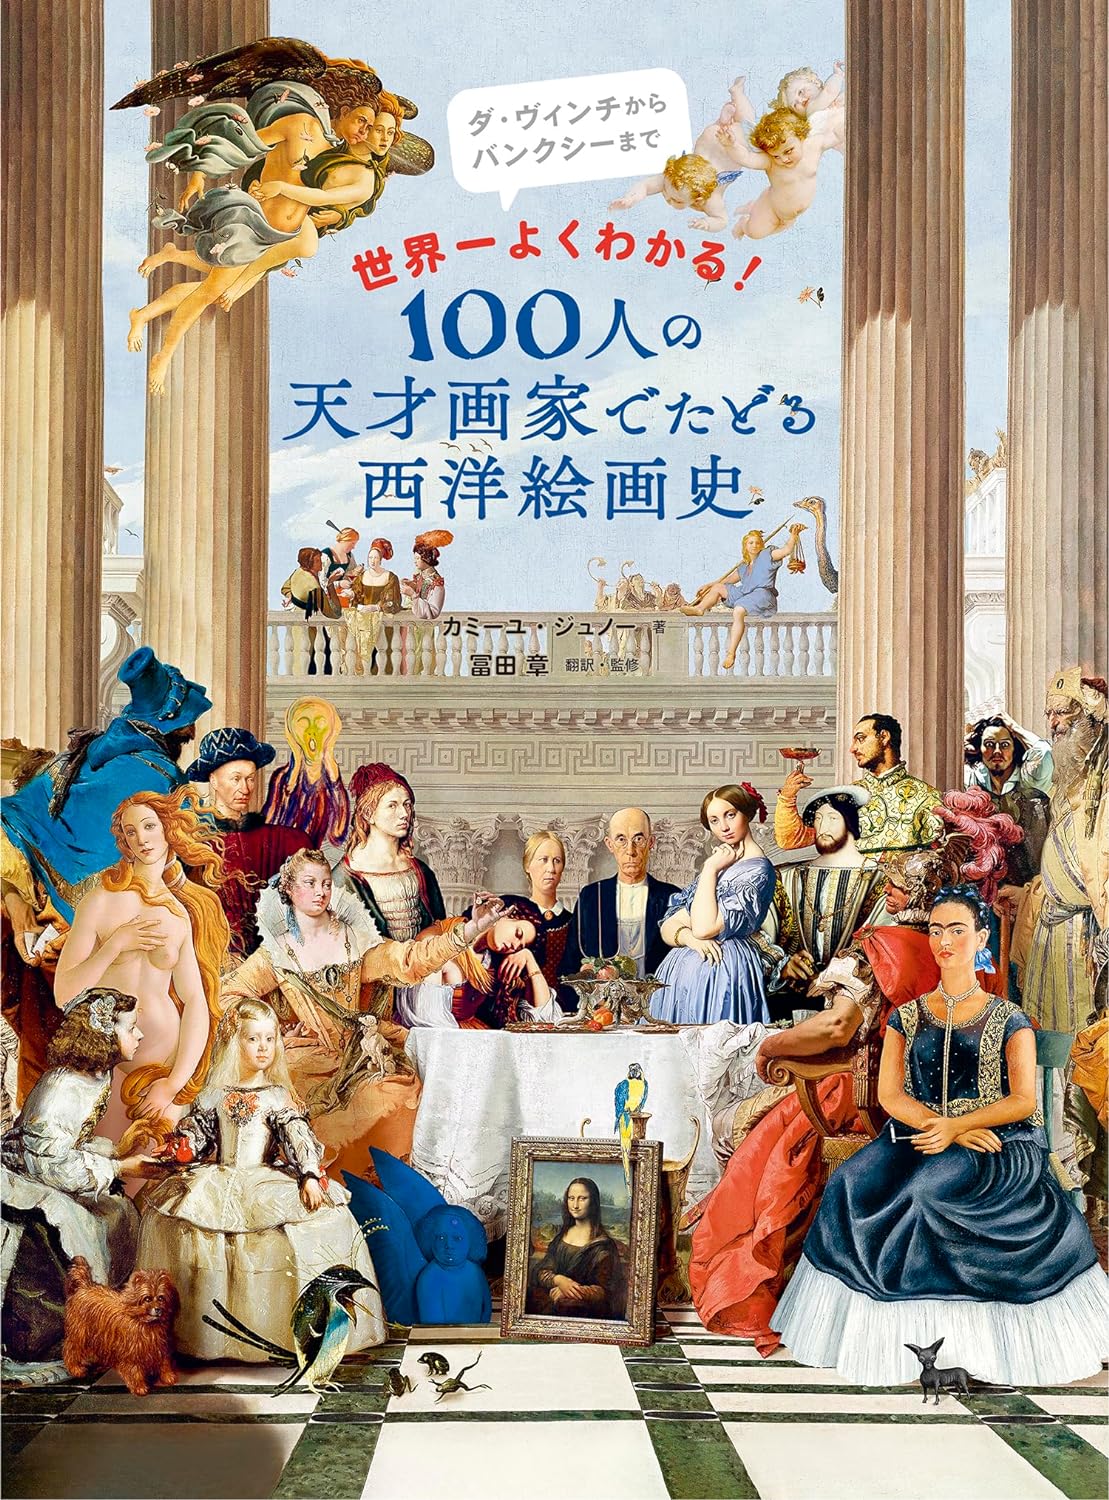 世界一よくわかる! 100人の天才畵家でたどる西洋繪畵史